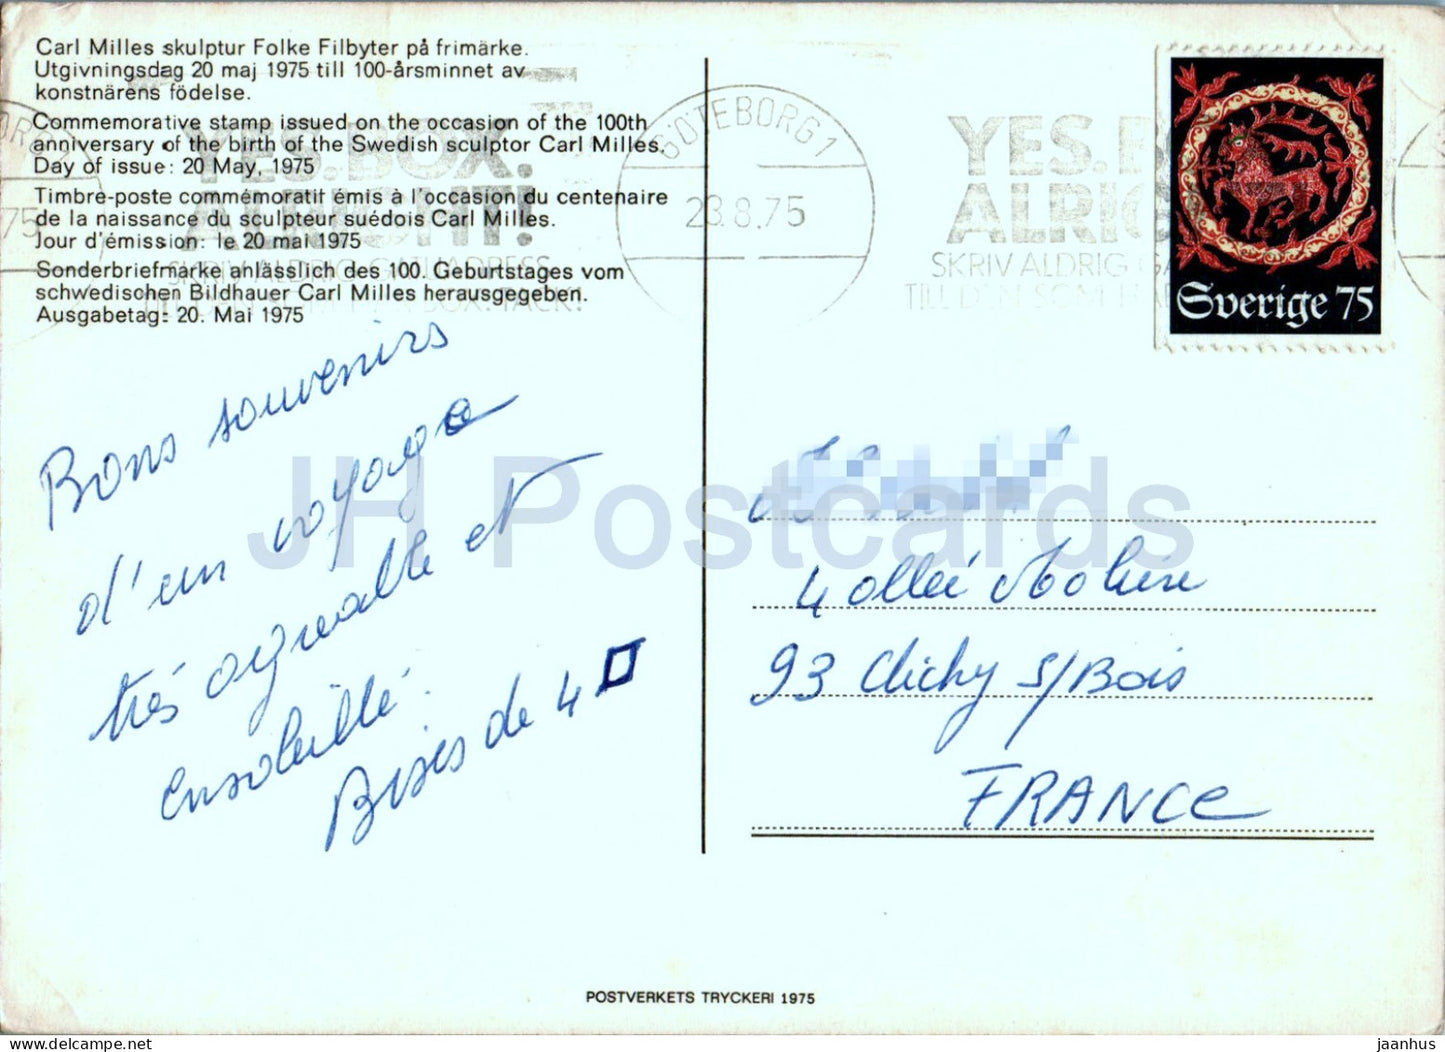 Jubiläumsbriefmarke des schwedischen Bildhauers Carl Milles – 1975 – Schweden – gebraucht 